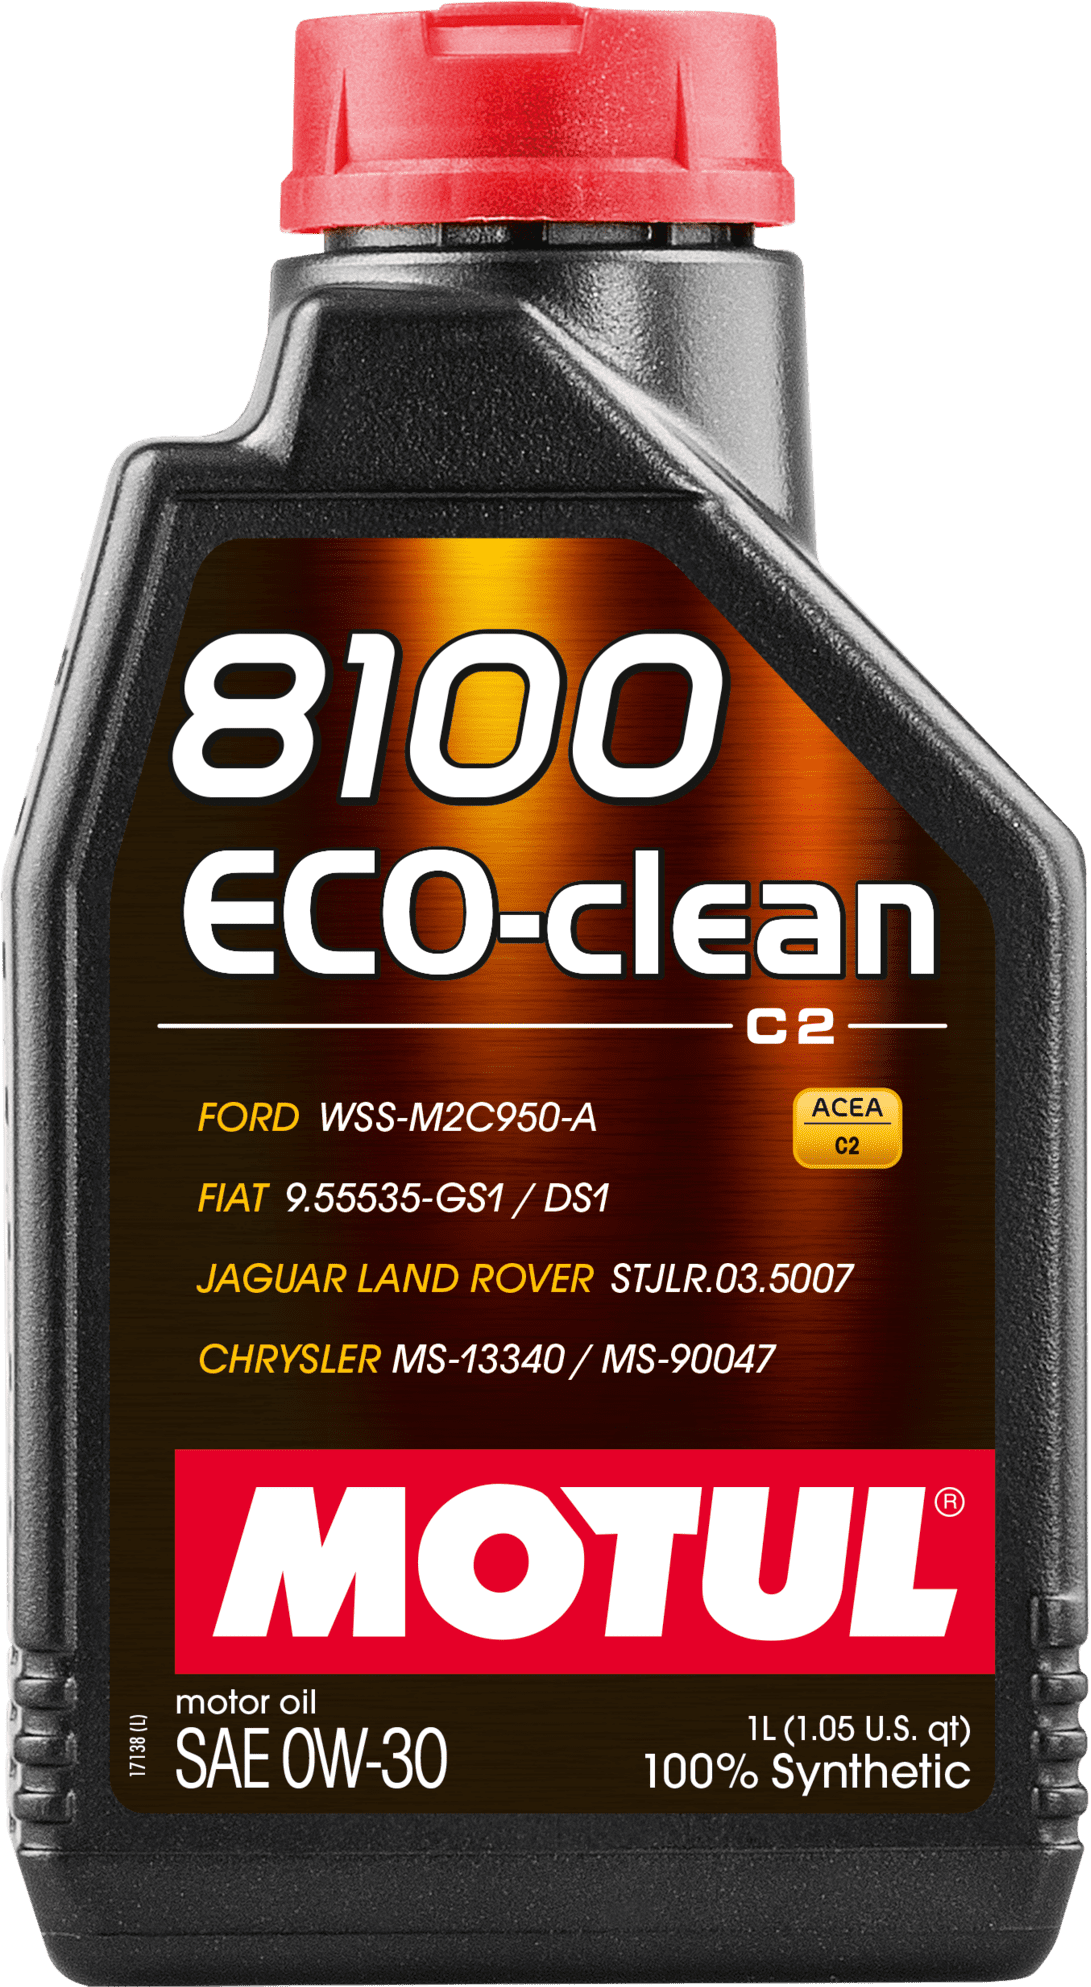 102888-1 100% synthetisch en brandstofbesparend motorsmeermiddel.